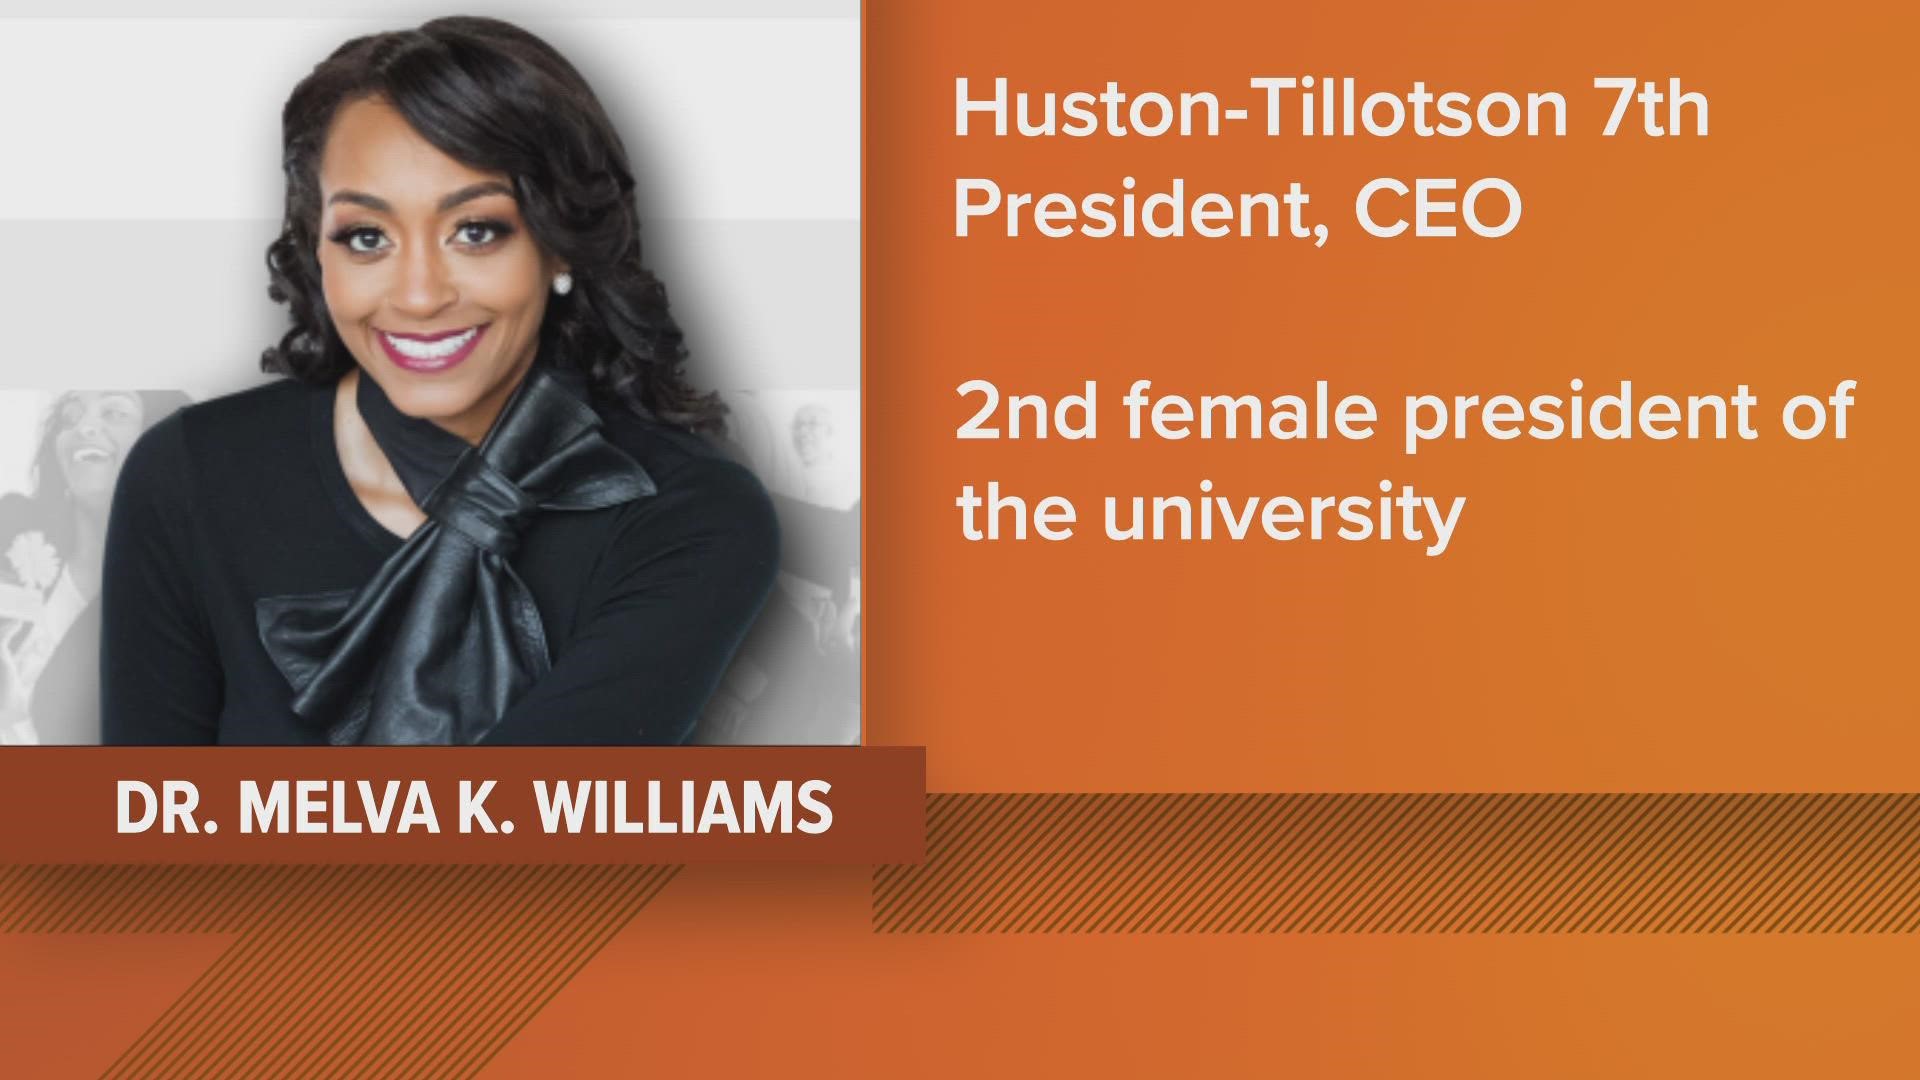 Huston-Tillotson University named Dr. Melva K. Williams as its seventh president. Former President Colette Burnette retired earlier this summer.